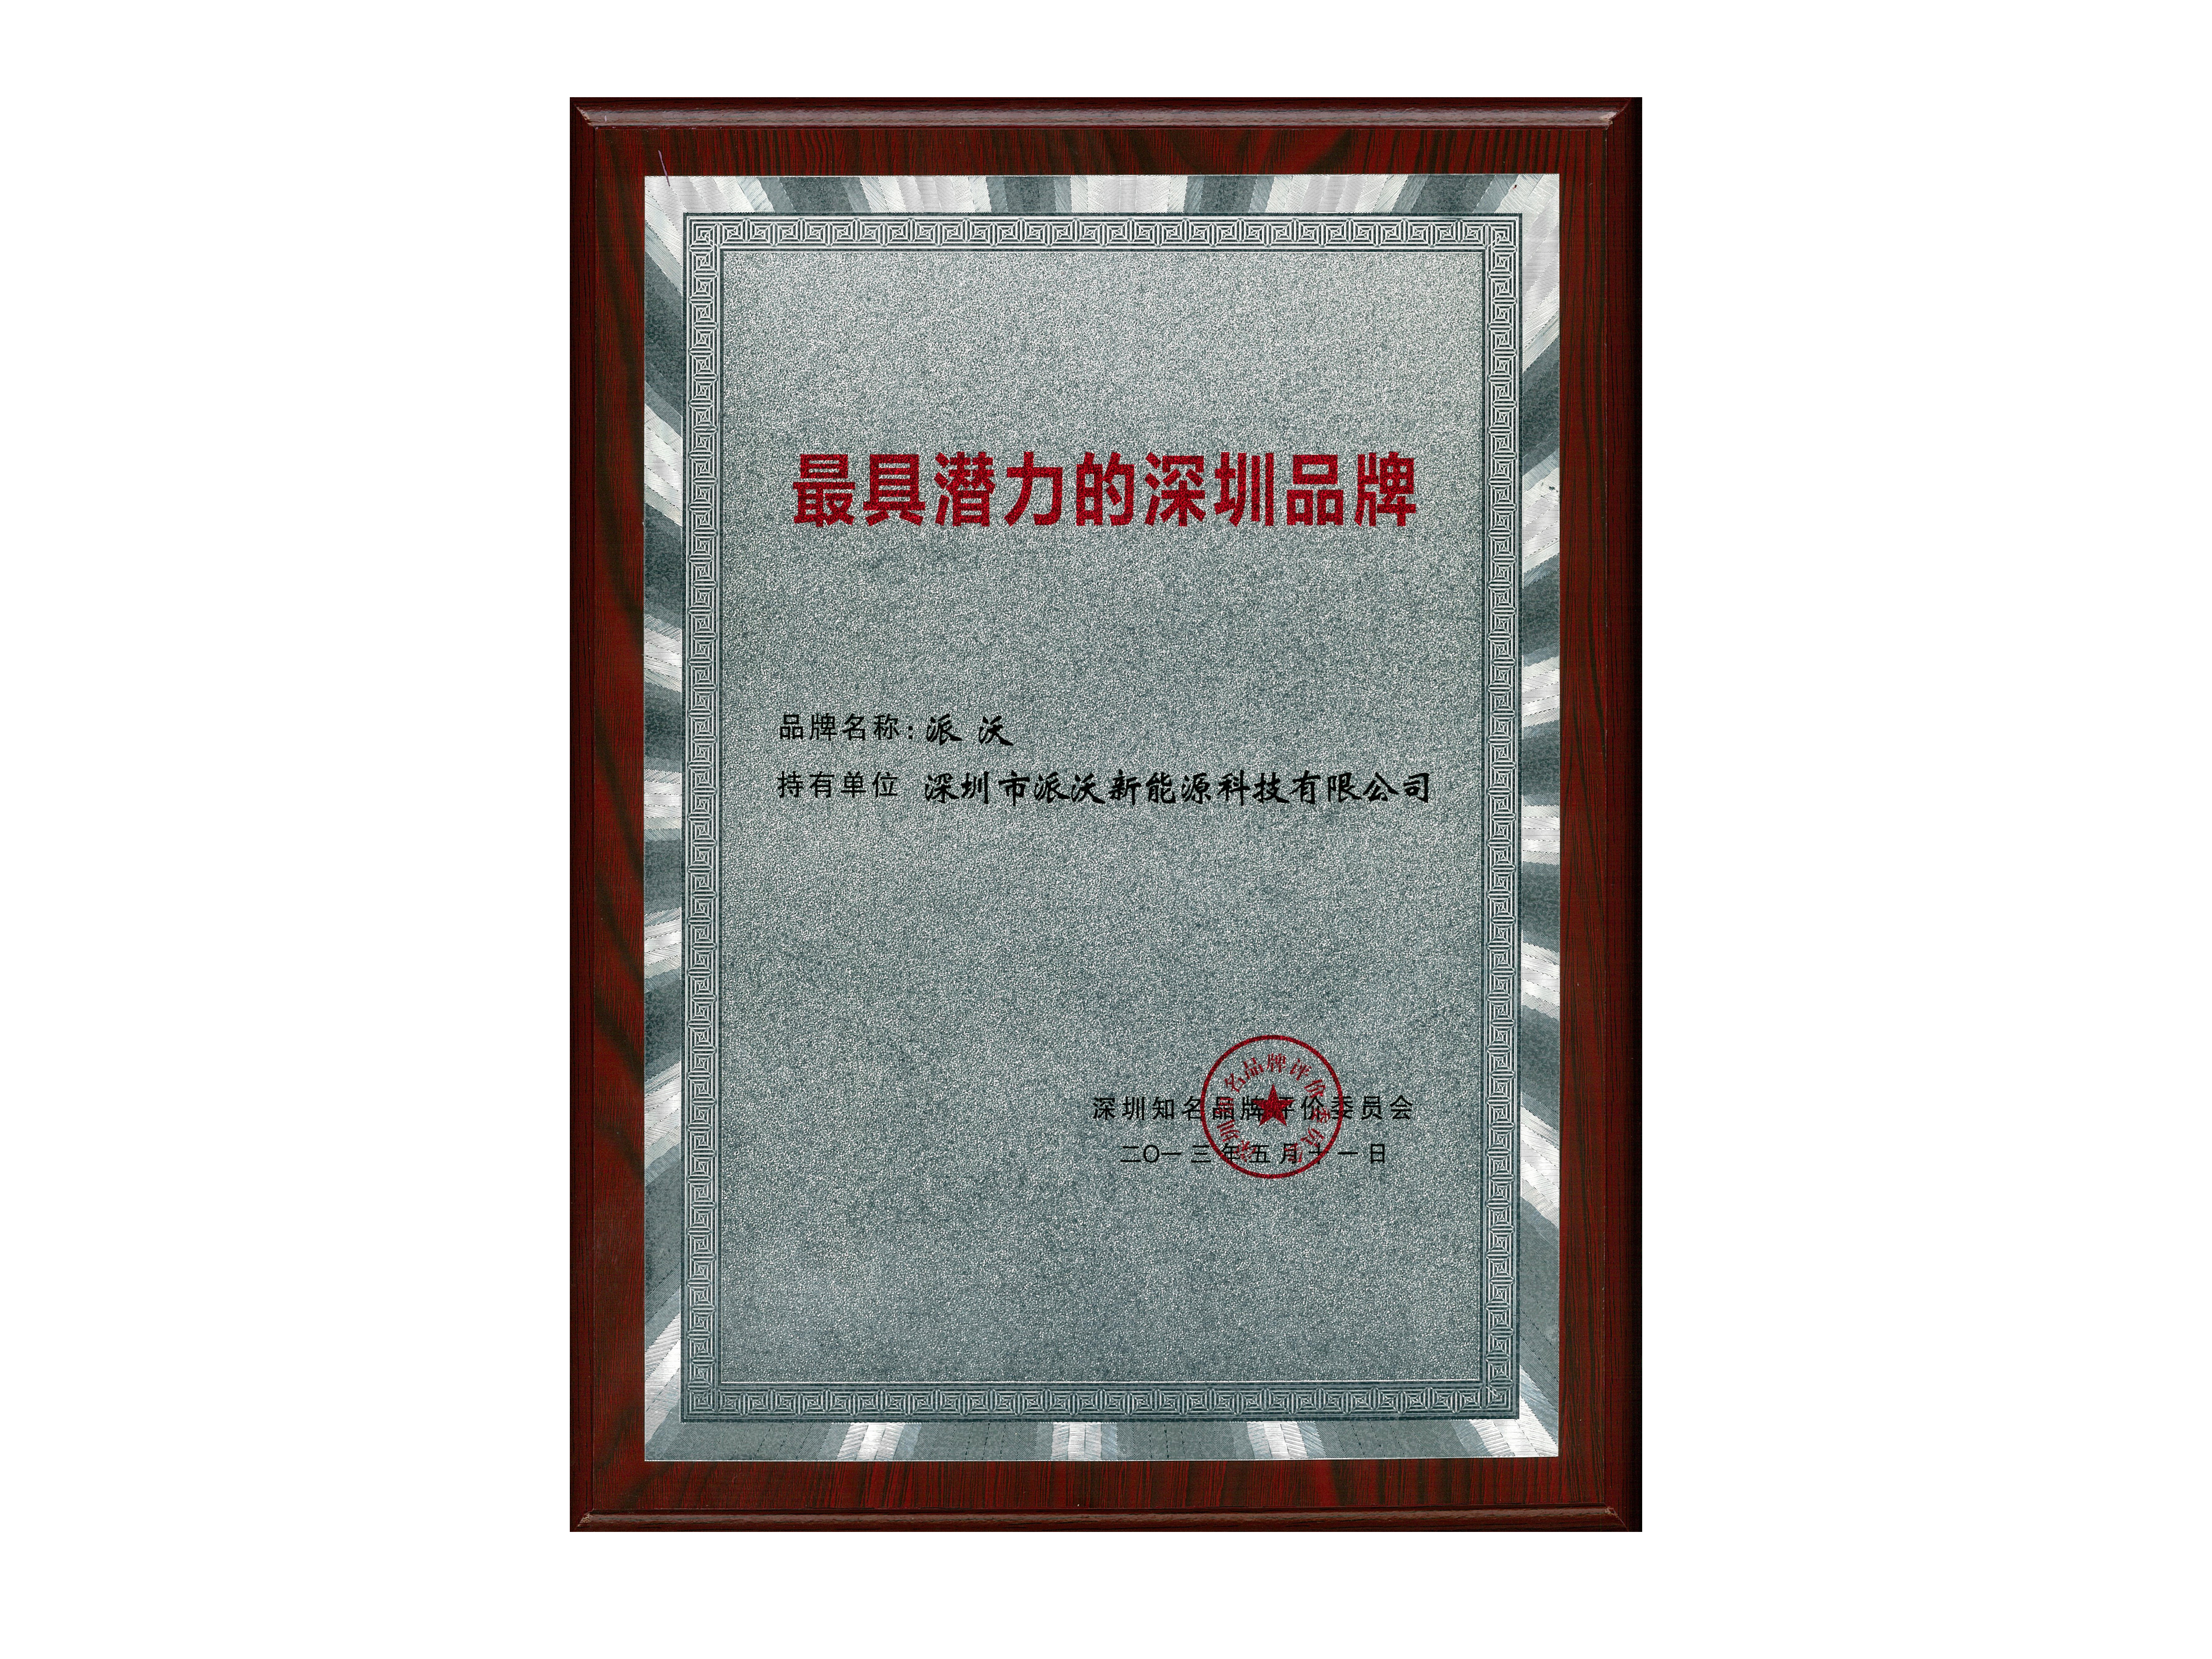 2013年获得“最具潜力的深圳品牌荣誉称号；